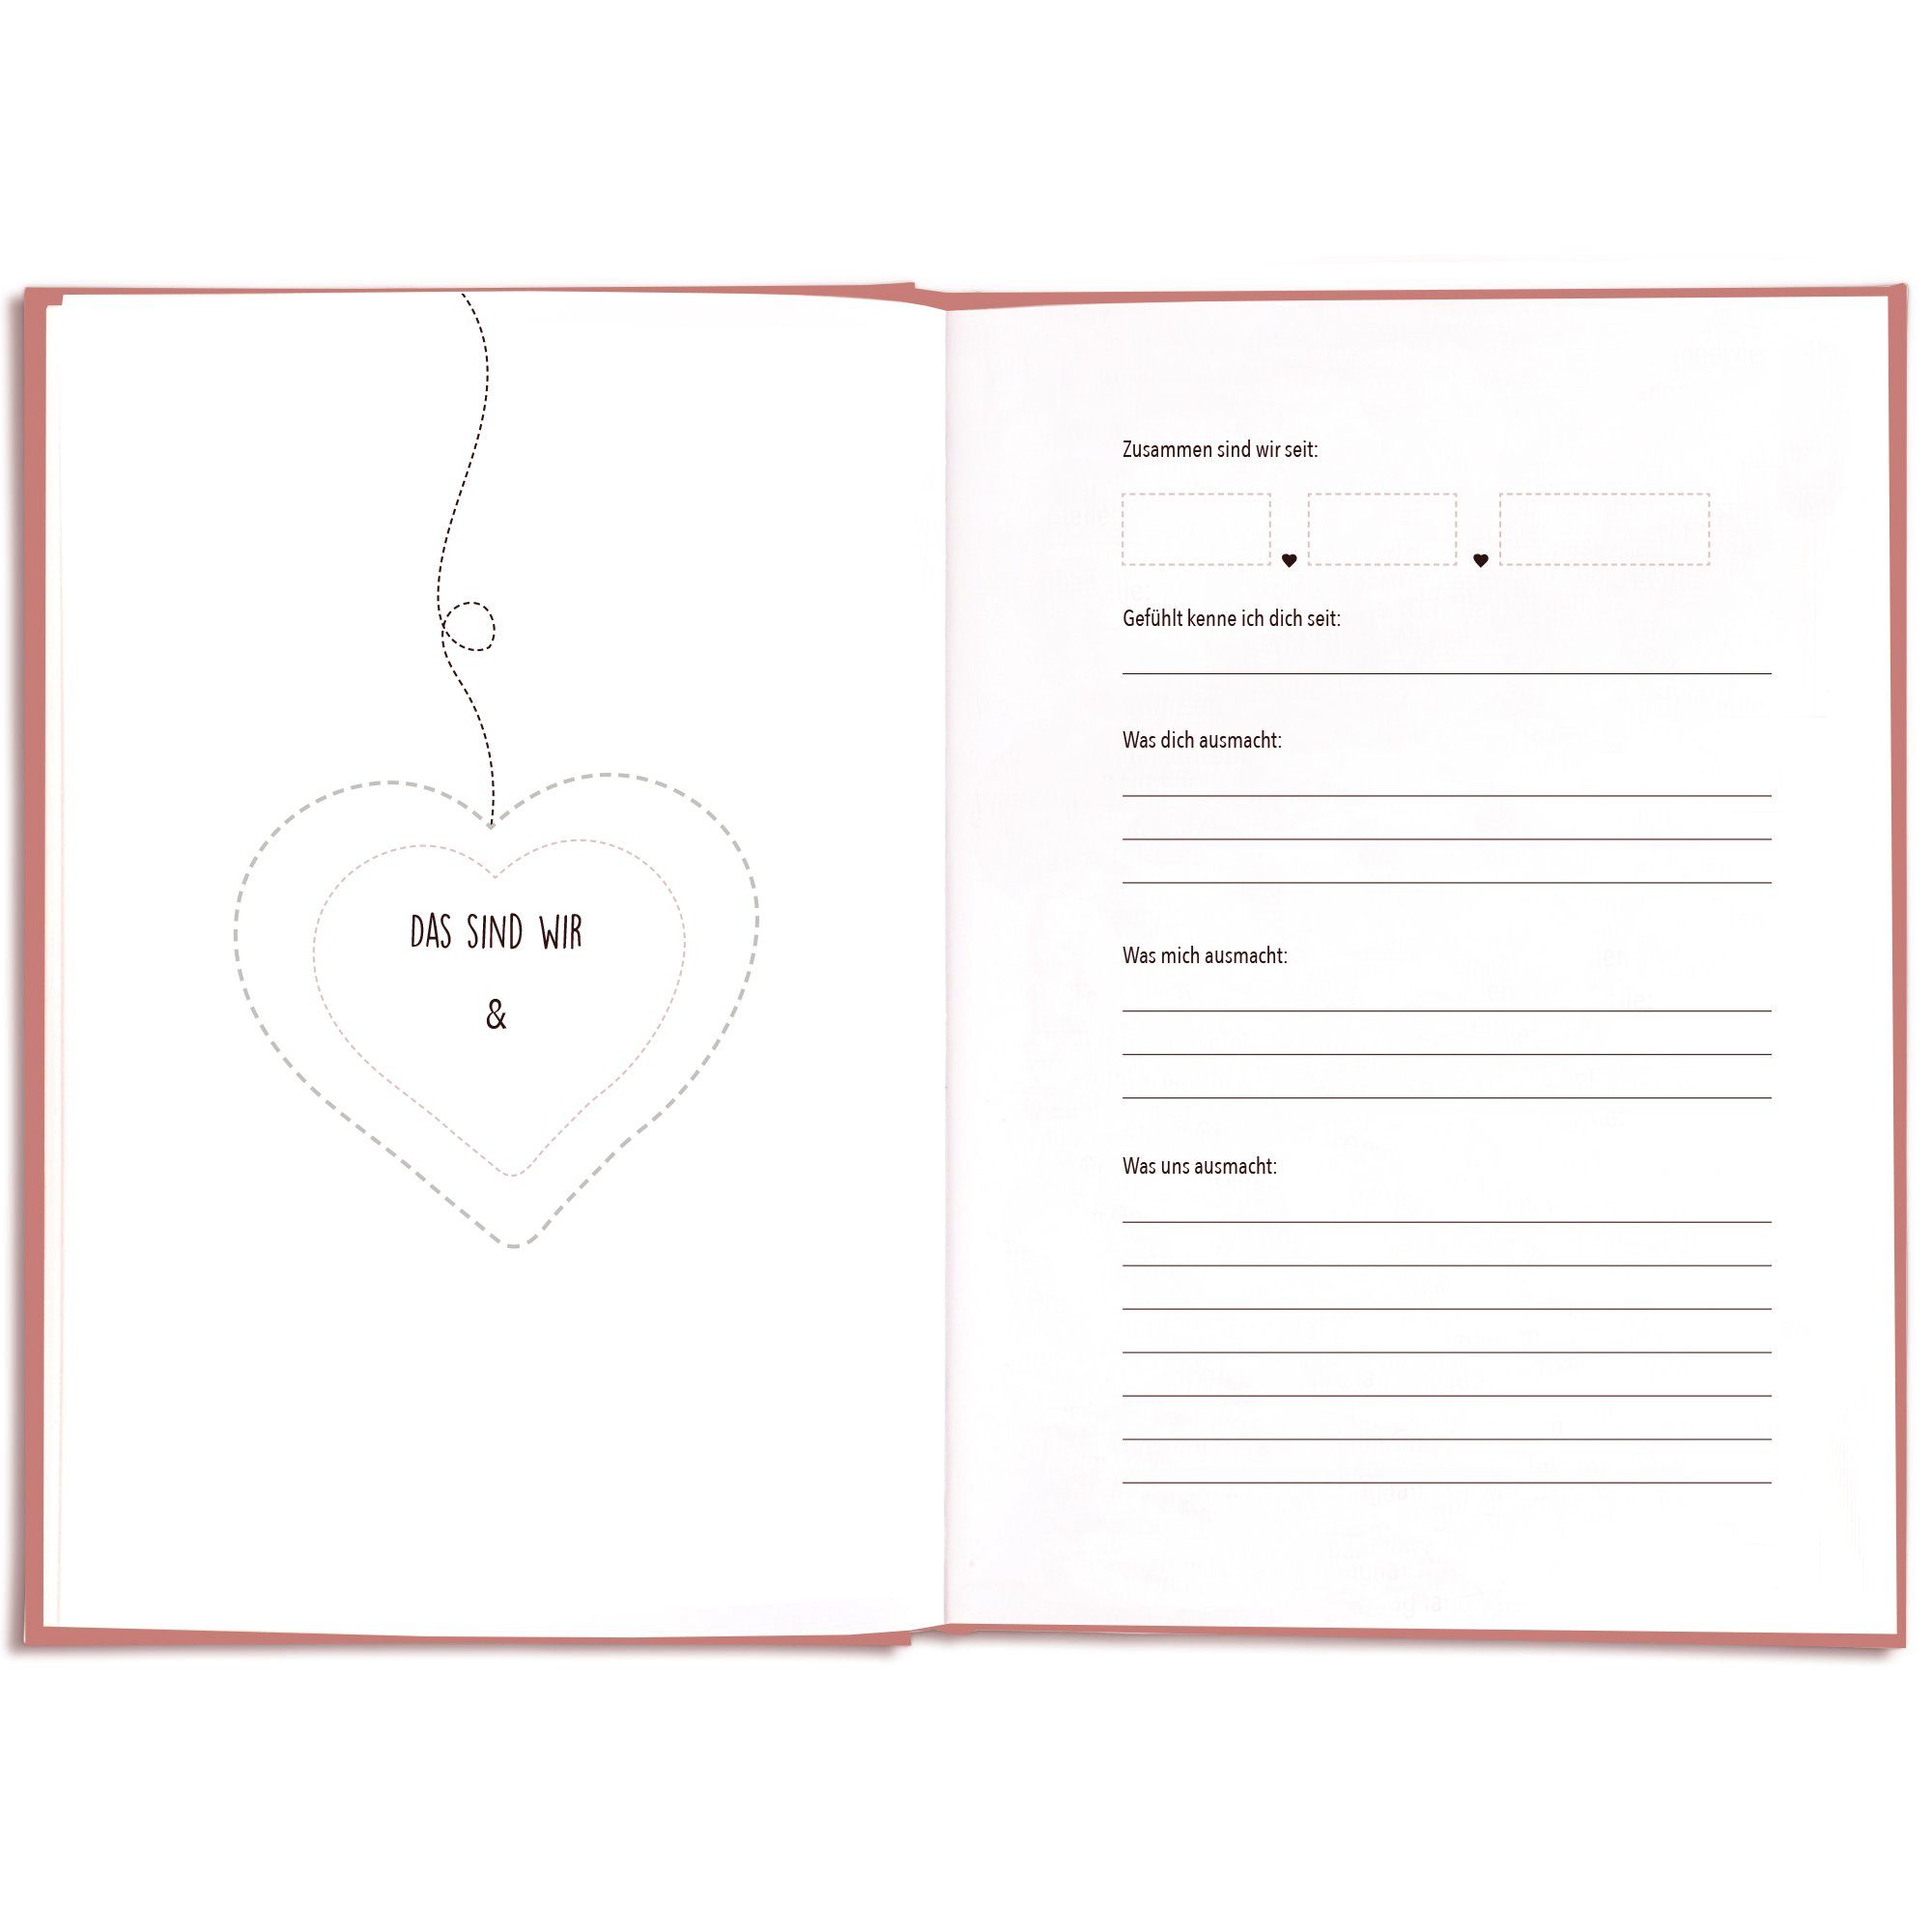 KISSES & Ausfüllen, zum Geschenk für Ihn, Sie & für für Notizbuch Geschenkidee Erinnerungsbuch CUPCAKES Pärchenbuch Paare,